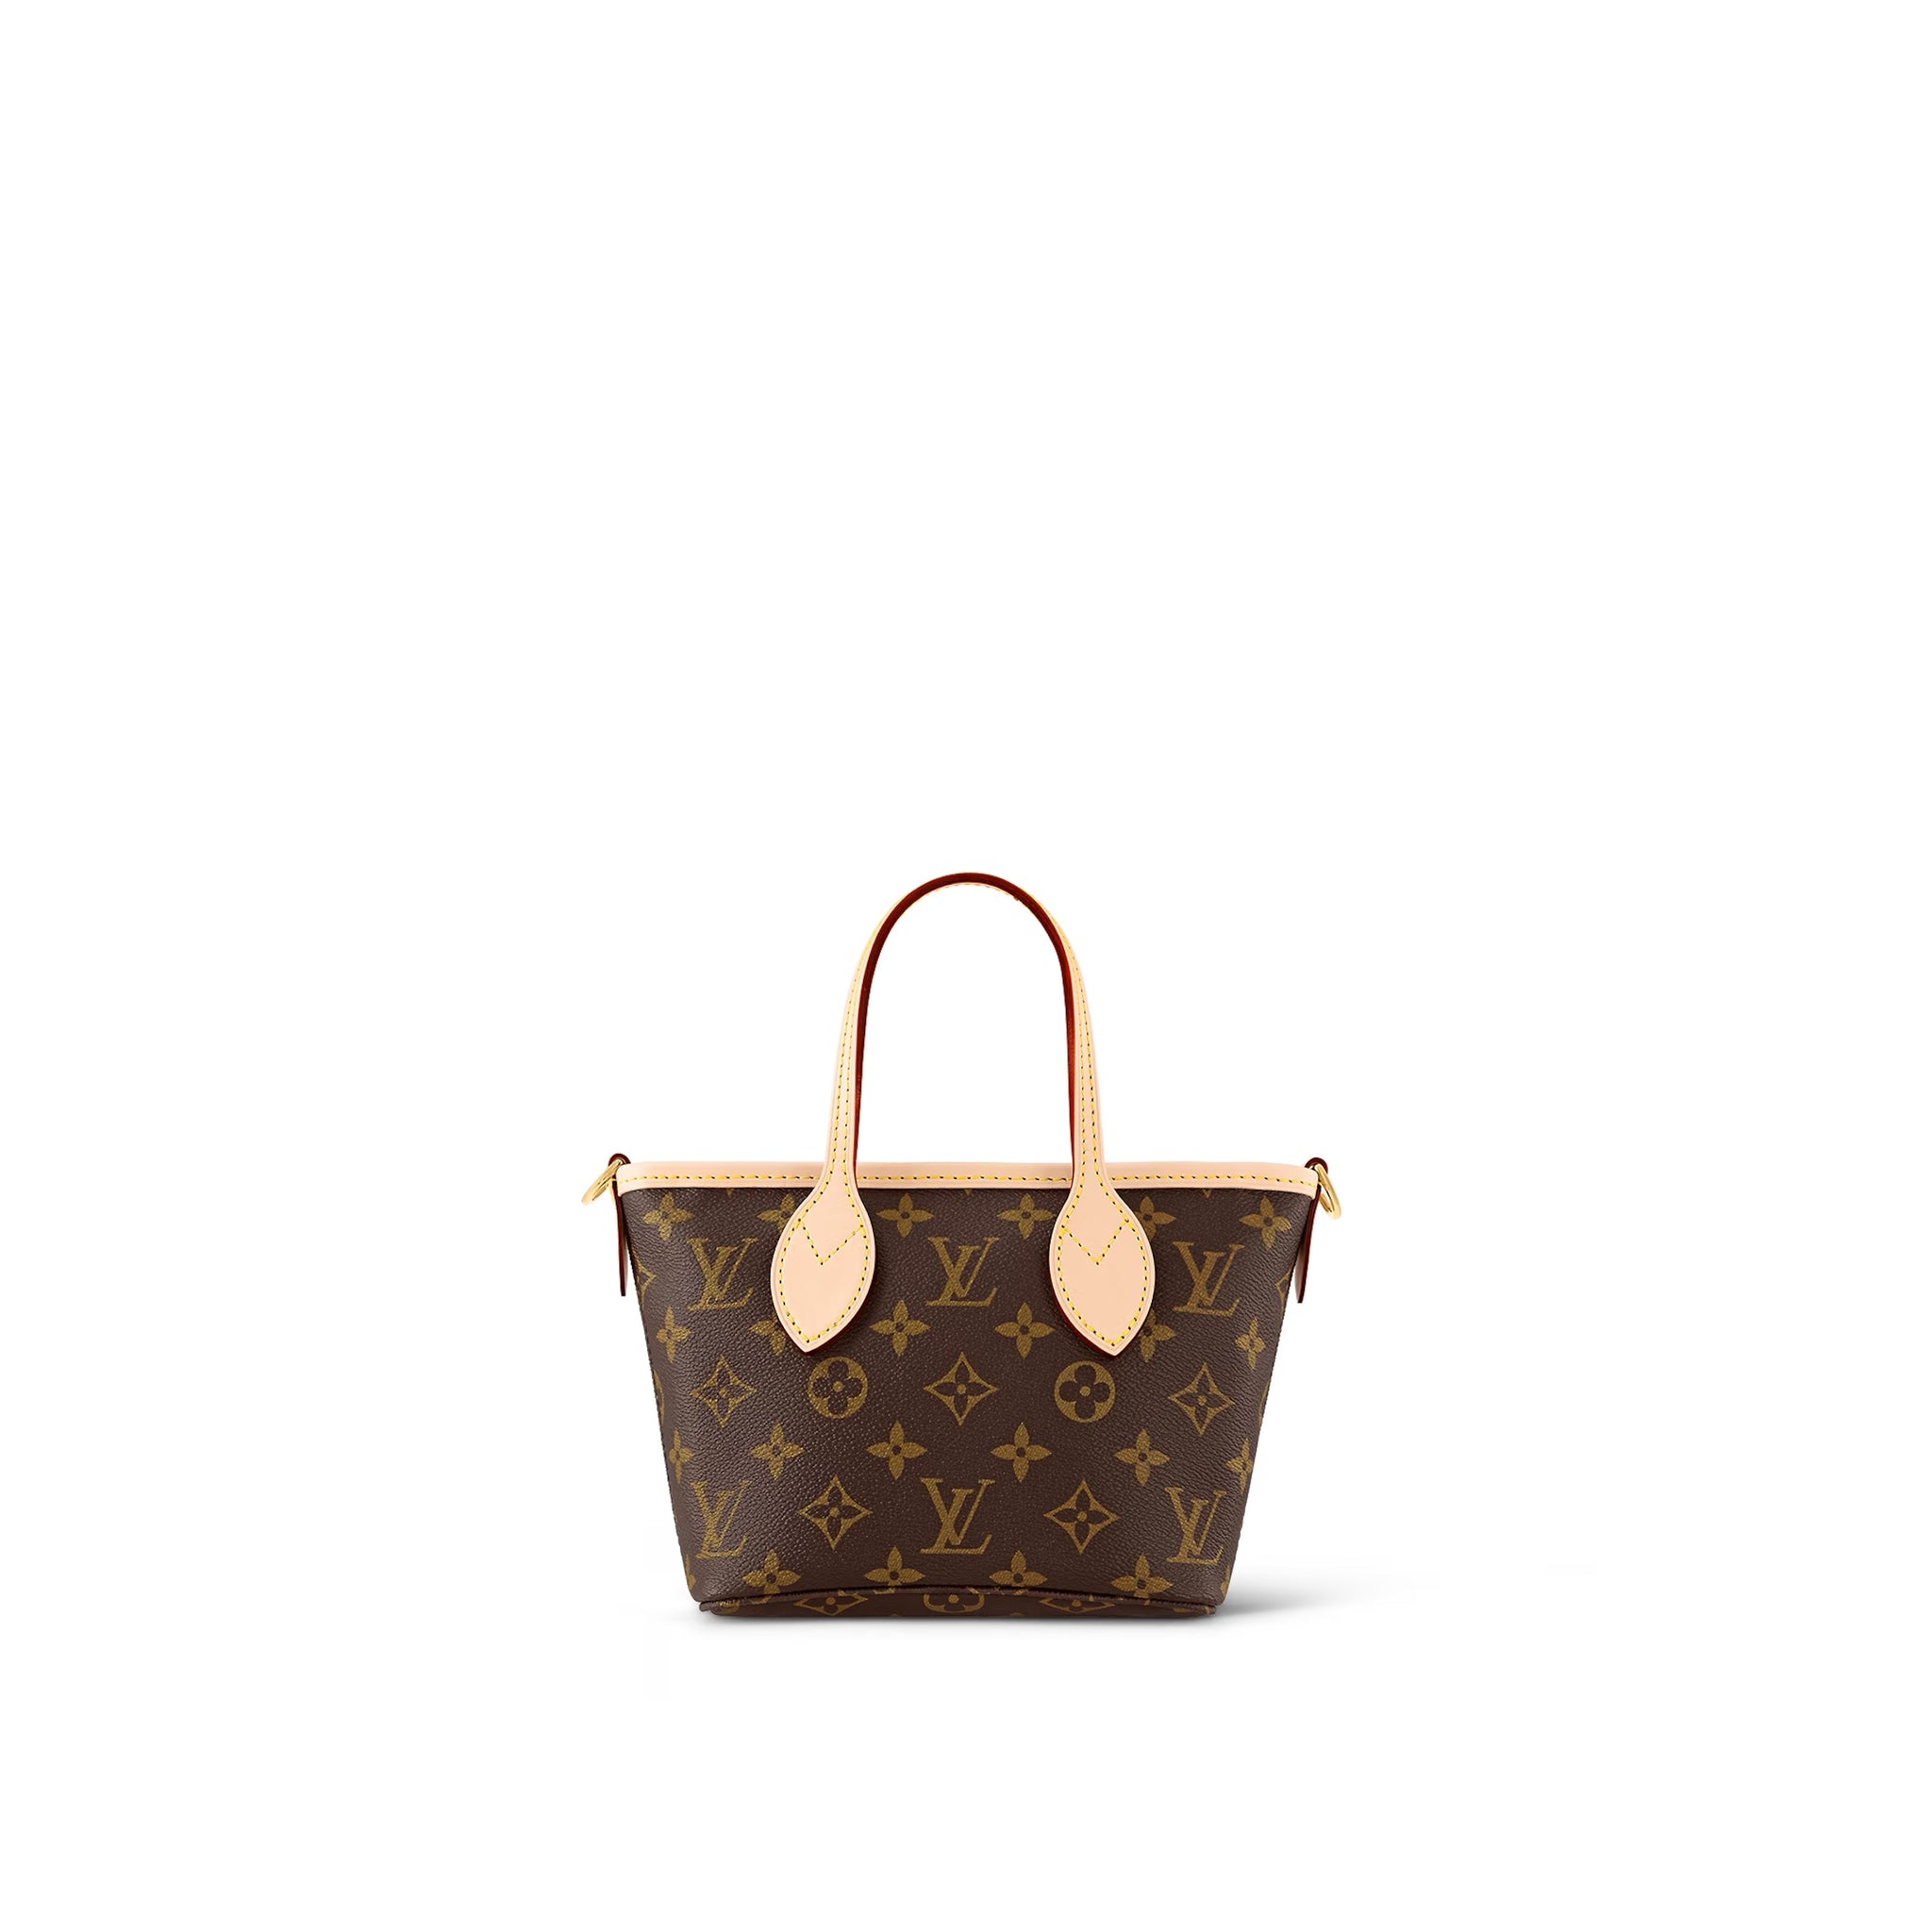 Louis Vuitton Monogram Trip Square Pouch - Neutrals Bag